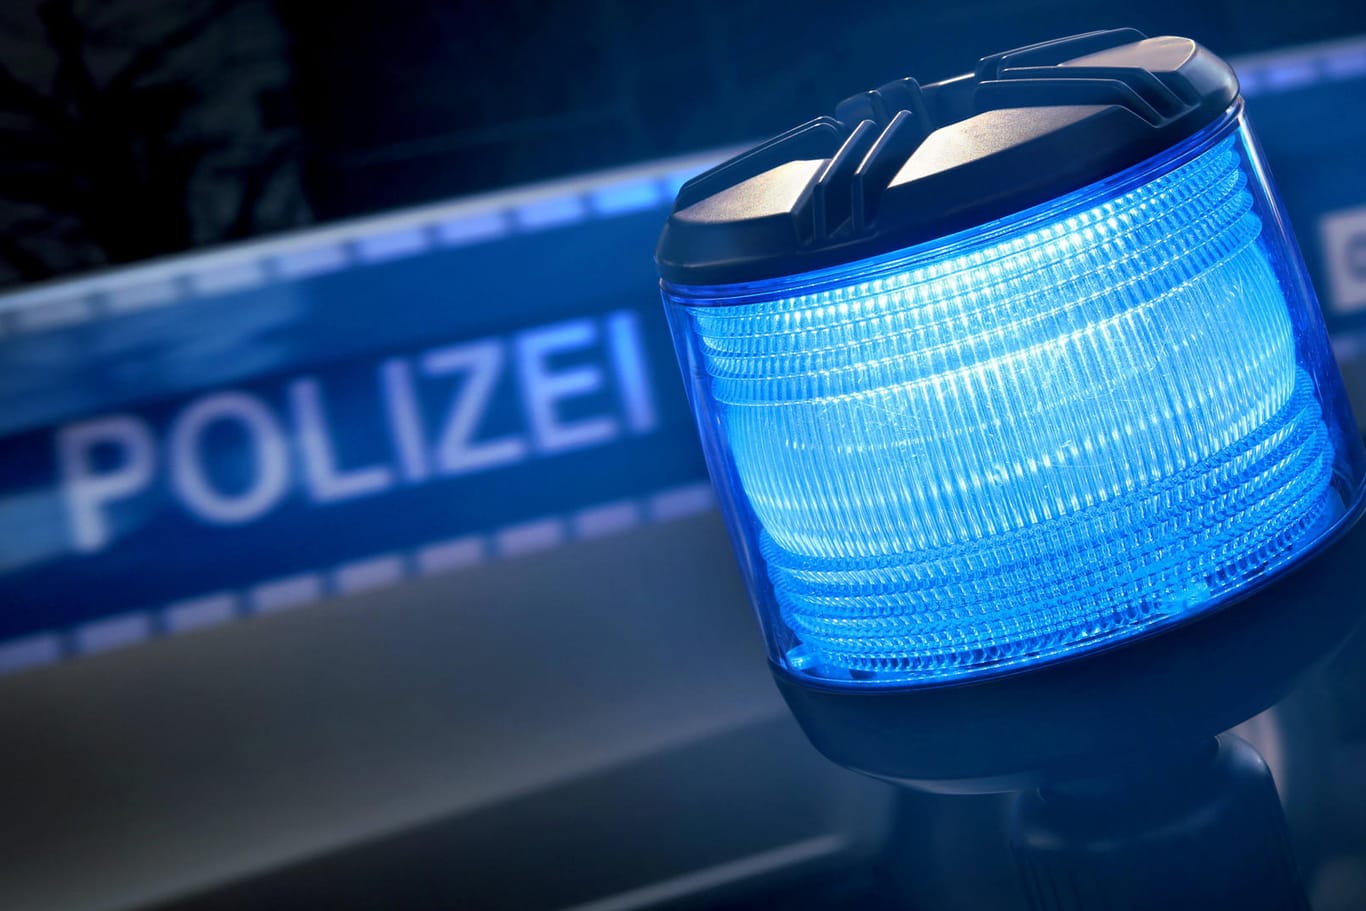 Die Polizei ist mit Blaulicht im Einsatz (Symbolbild): Eine Gruppe Männer hat einen 22-Jährigen an einer Tankstelle in Berlin-Reinickendorf attackiert und schwer am Kopf verletzt.